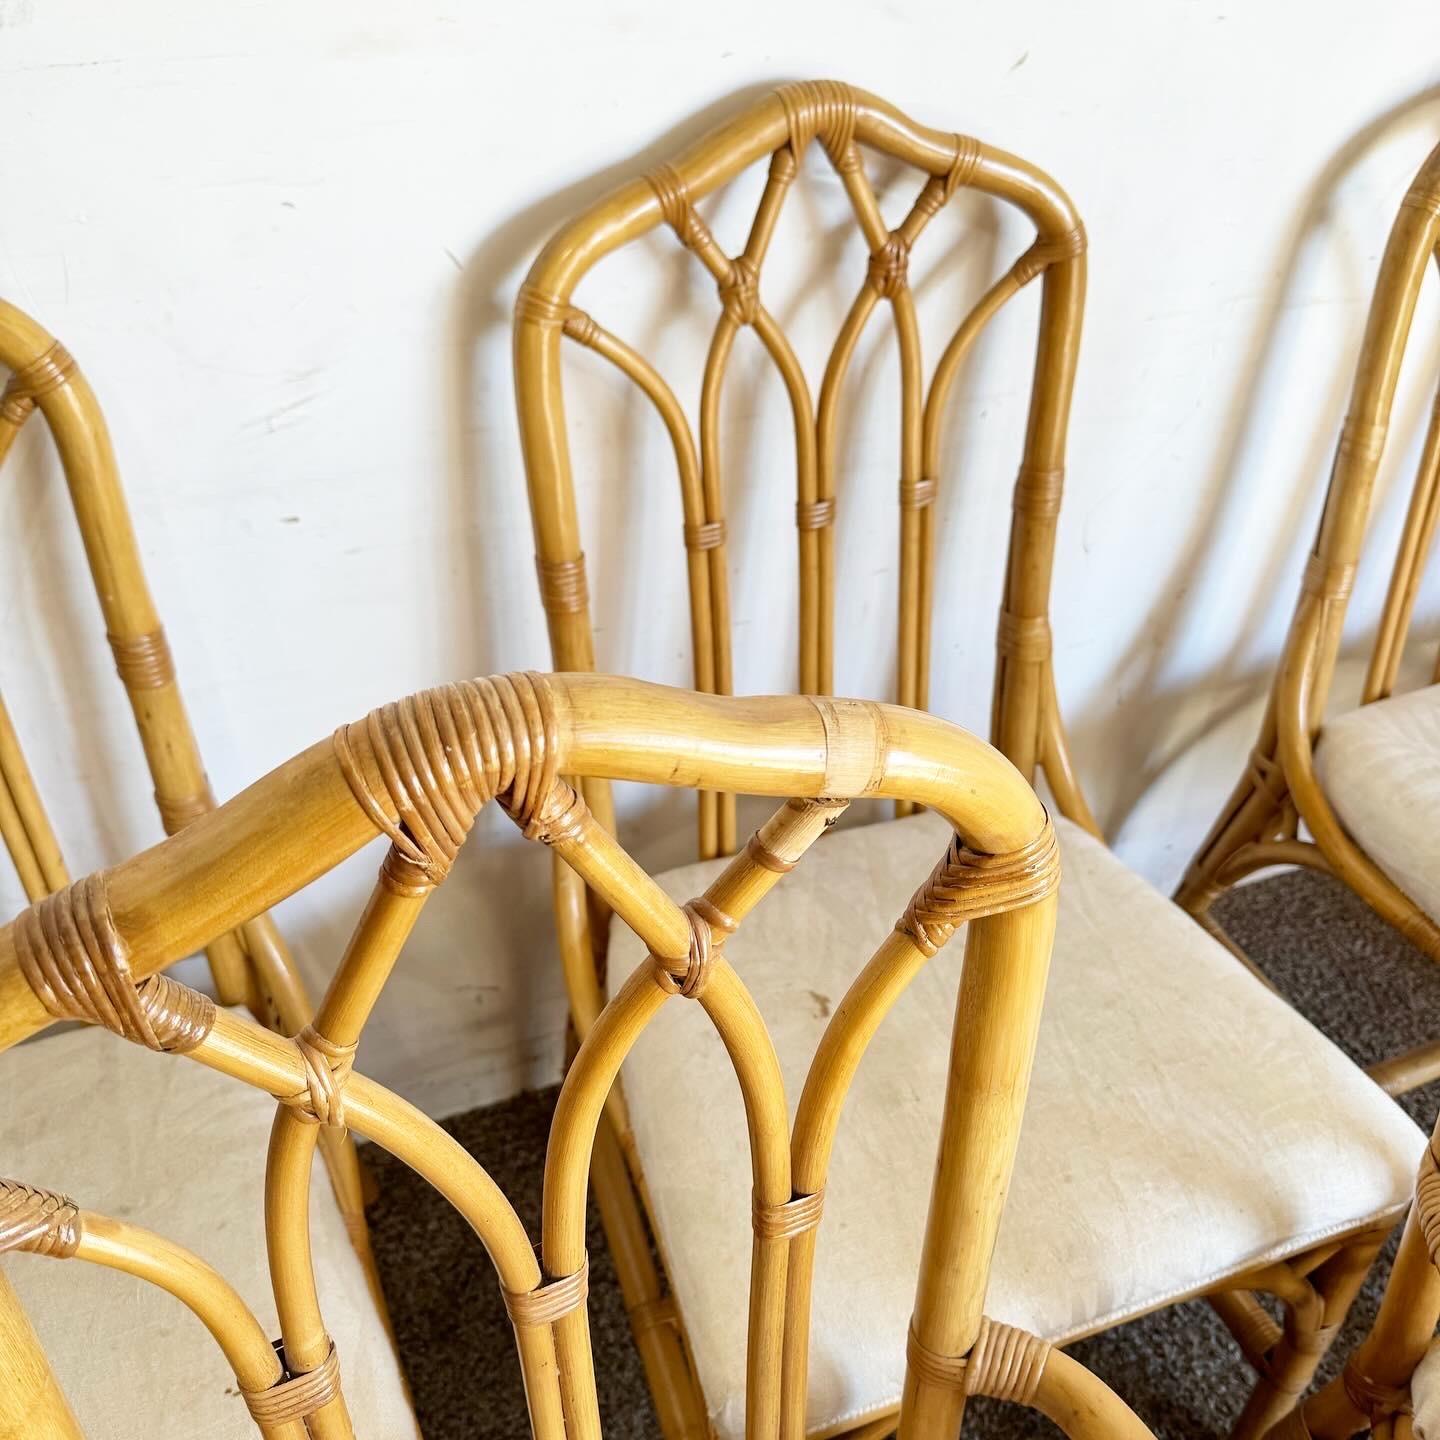 Erhöhen Sie Ihr Esserlebnis mit diesem Satz von 7 Boho Chic Bamboo Rattan Henry Link Dining Chairs. Die aus natürlichem Bambus und Rattan gefertigten Stühle bieten ein klassisches Design mit tropischem Einschlag. Die aufwendige Flechtung und die